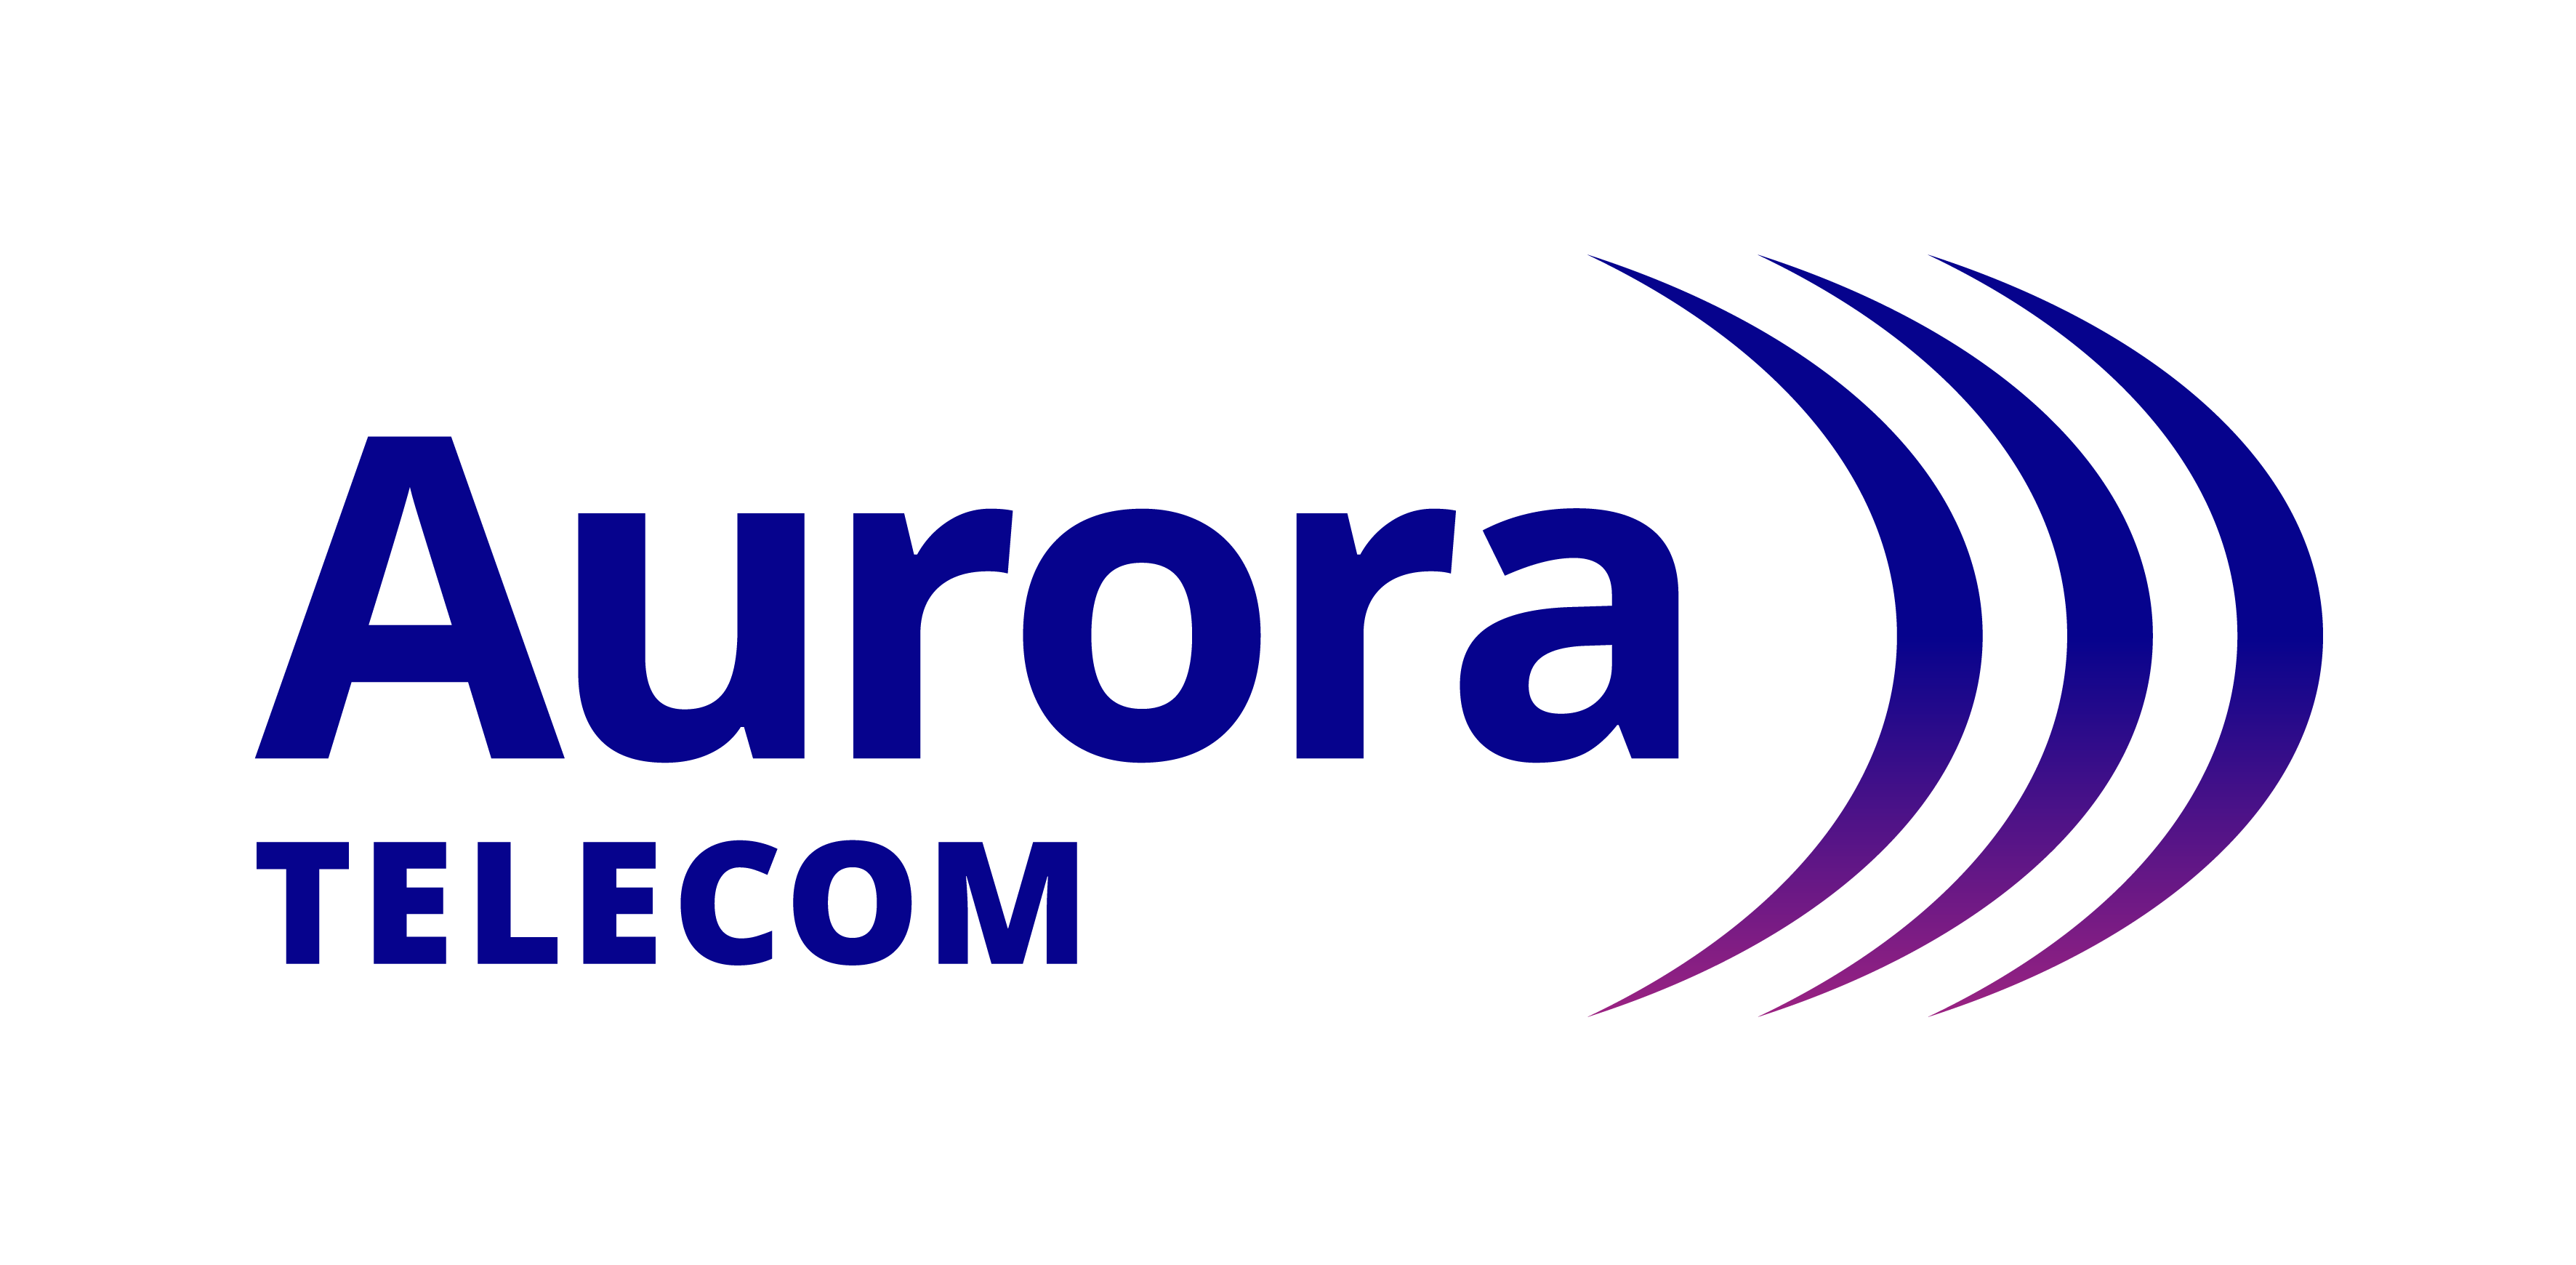 Aurora Telecom